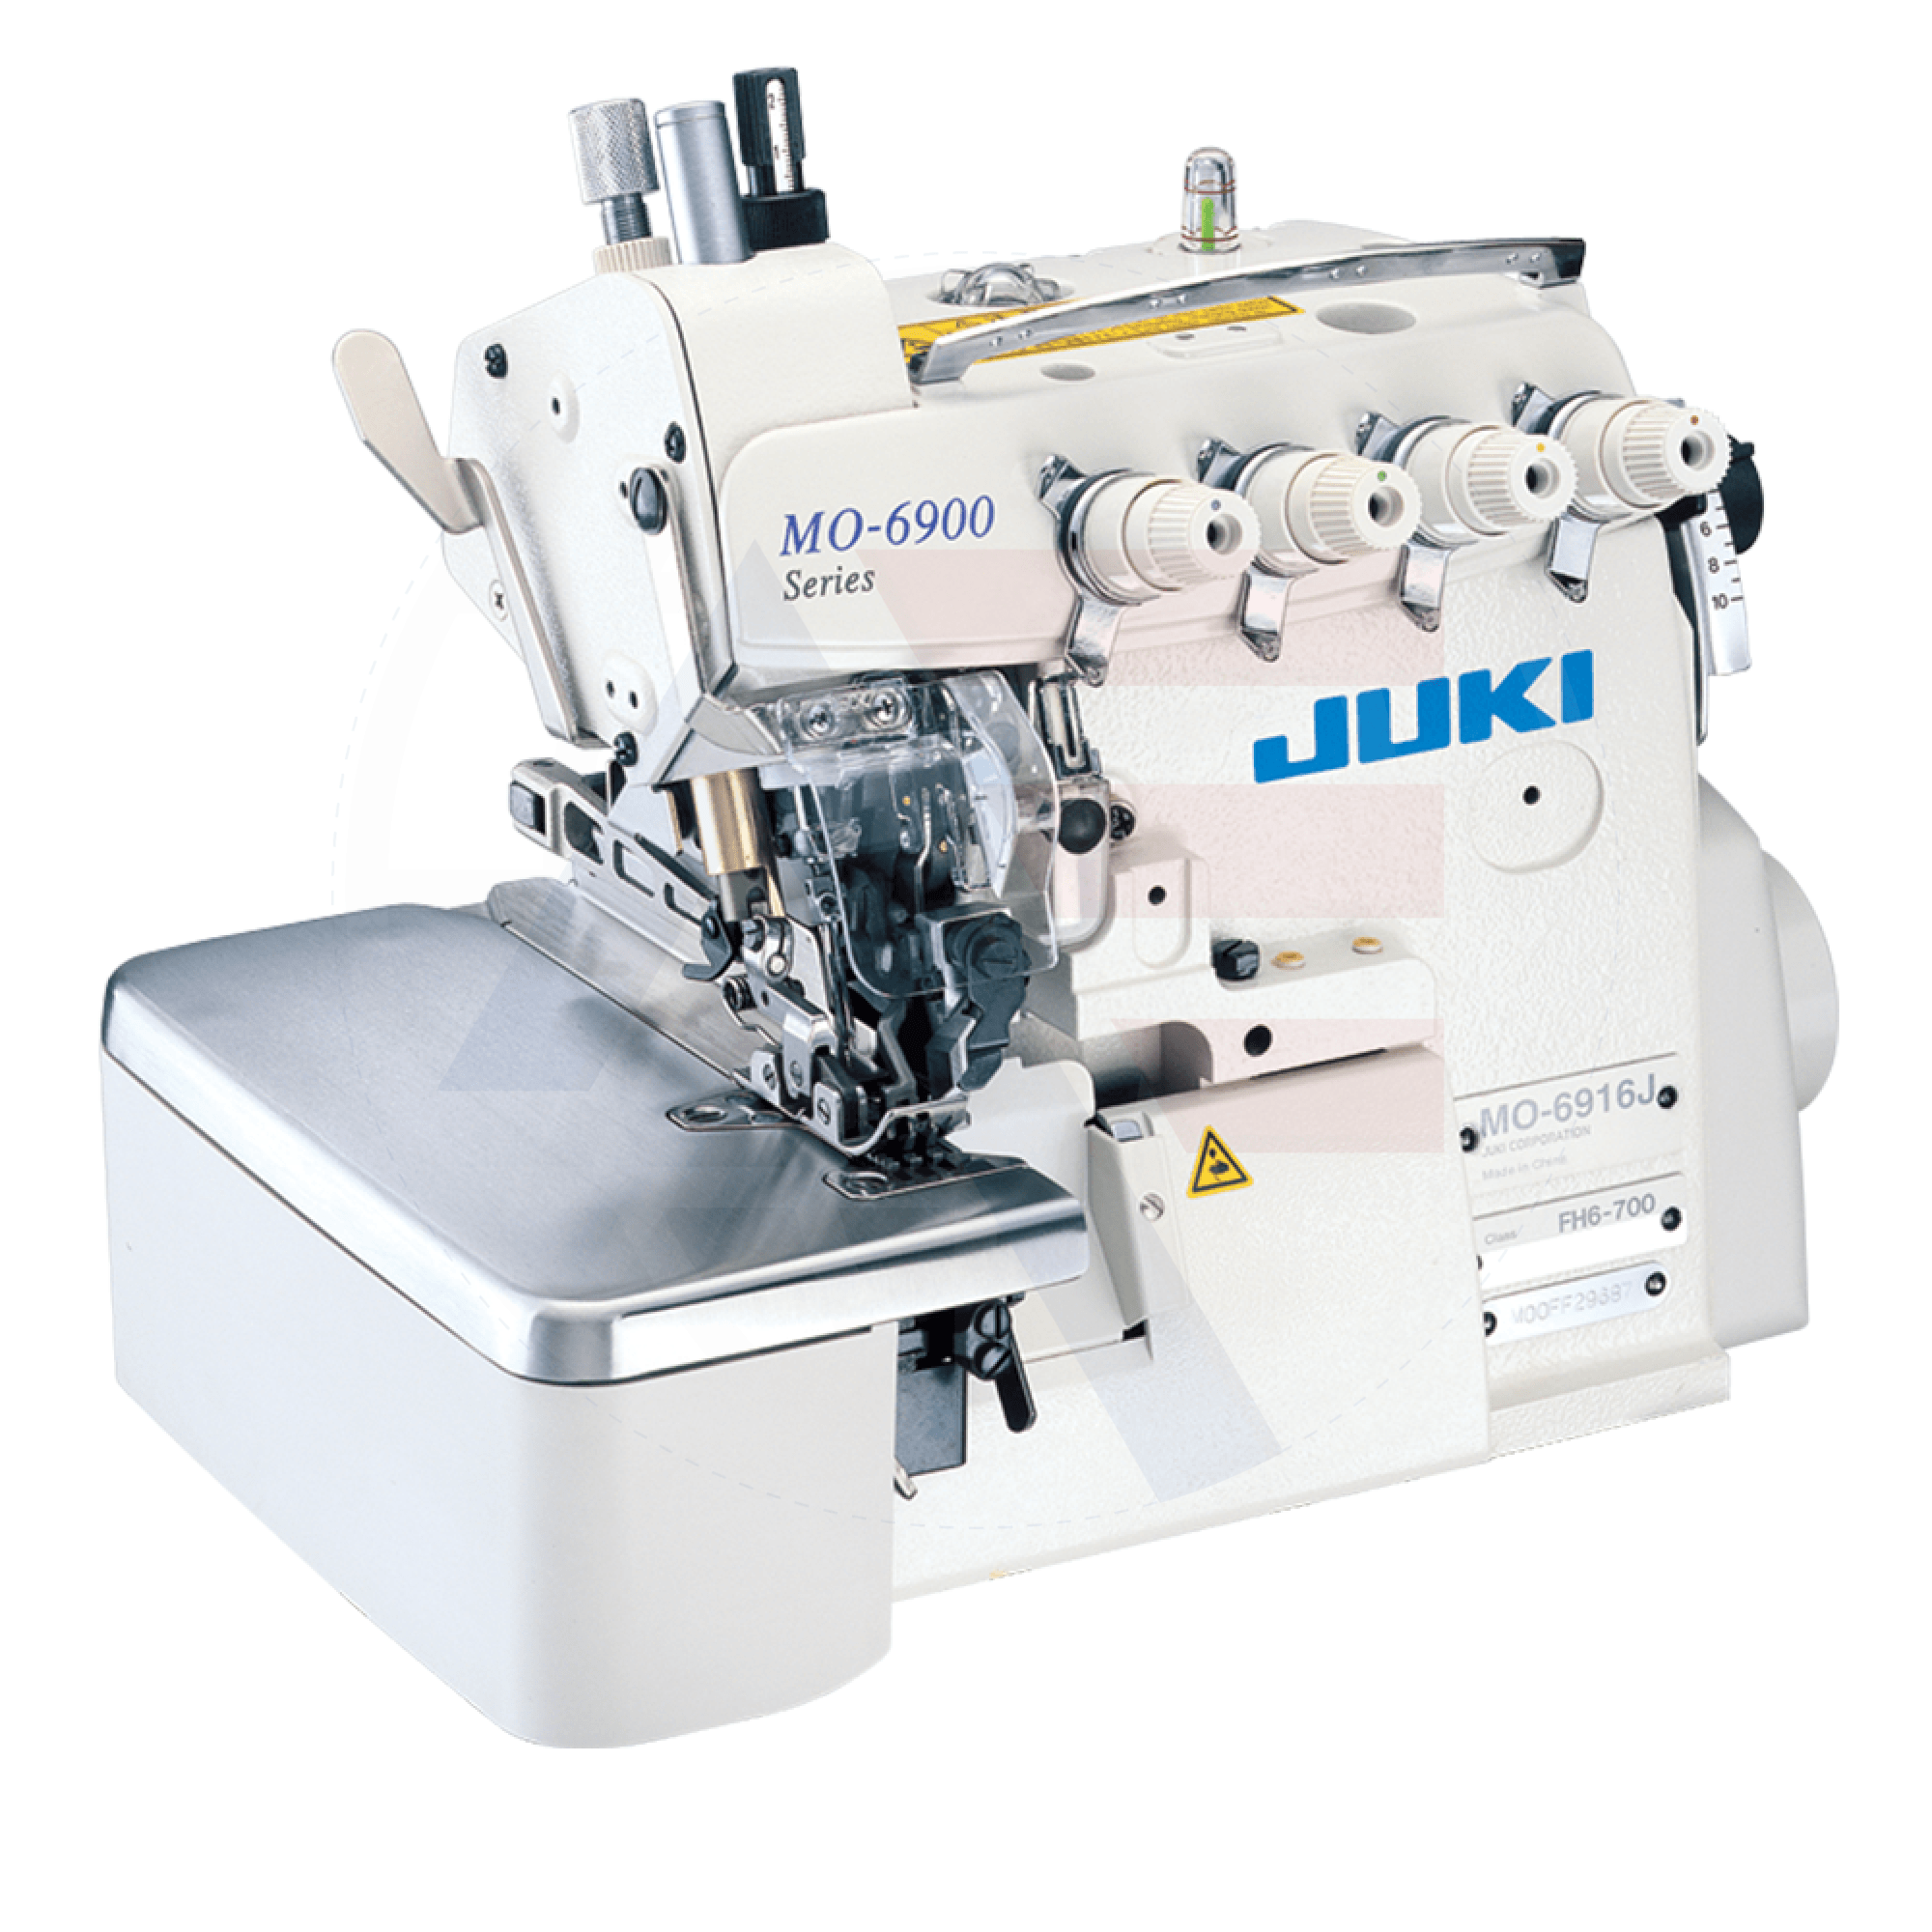 Juki Mo-6916R 5-Thread Overlock Machine Sewing Machines